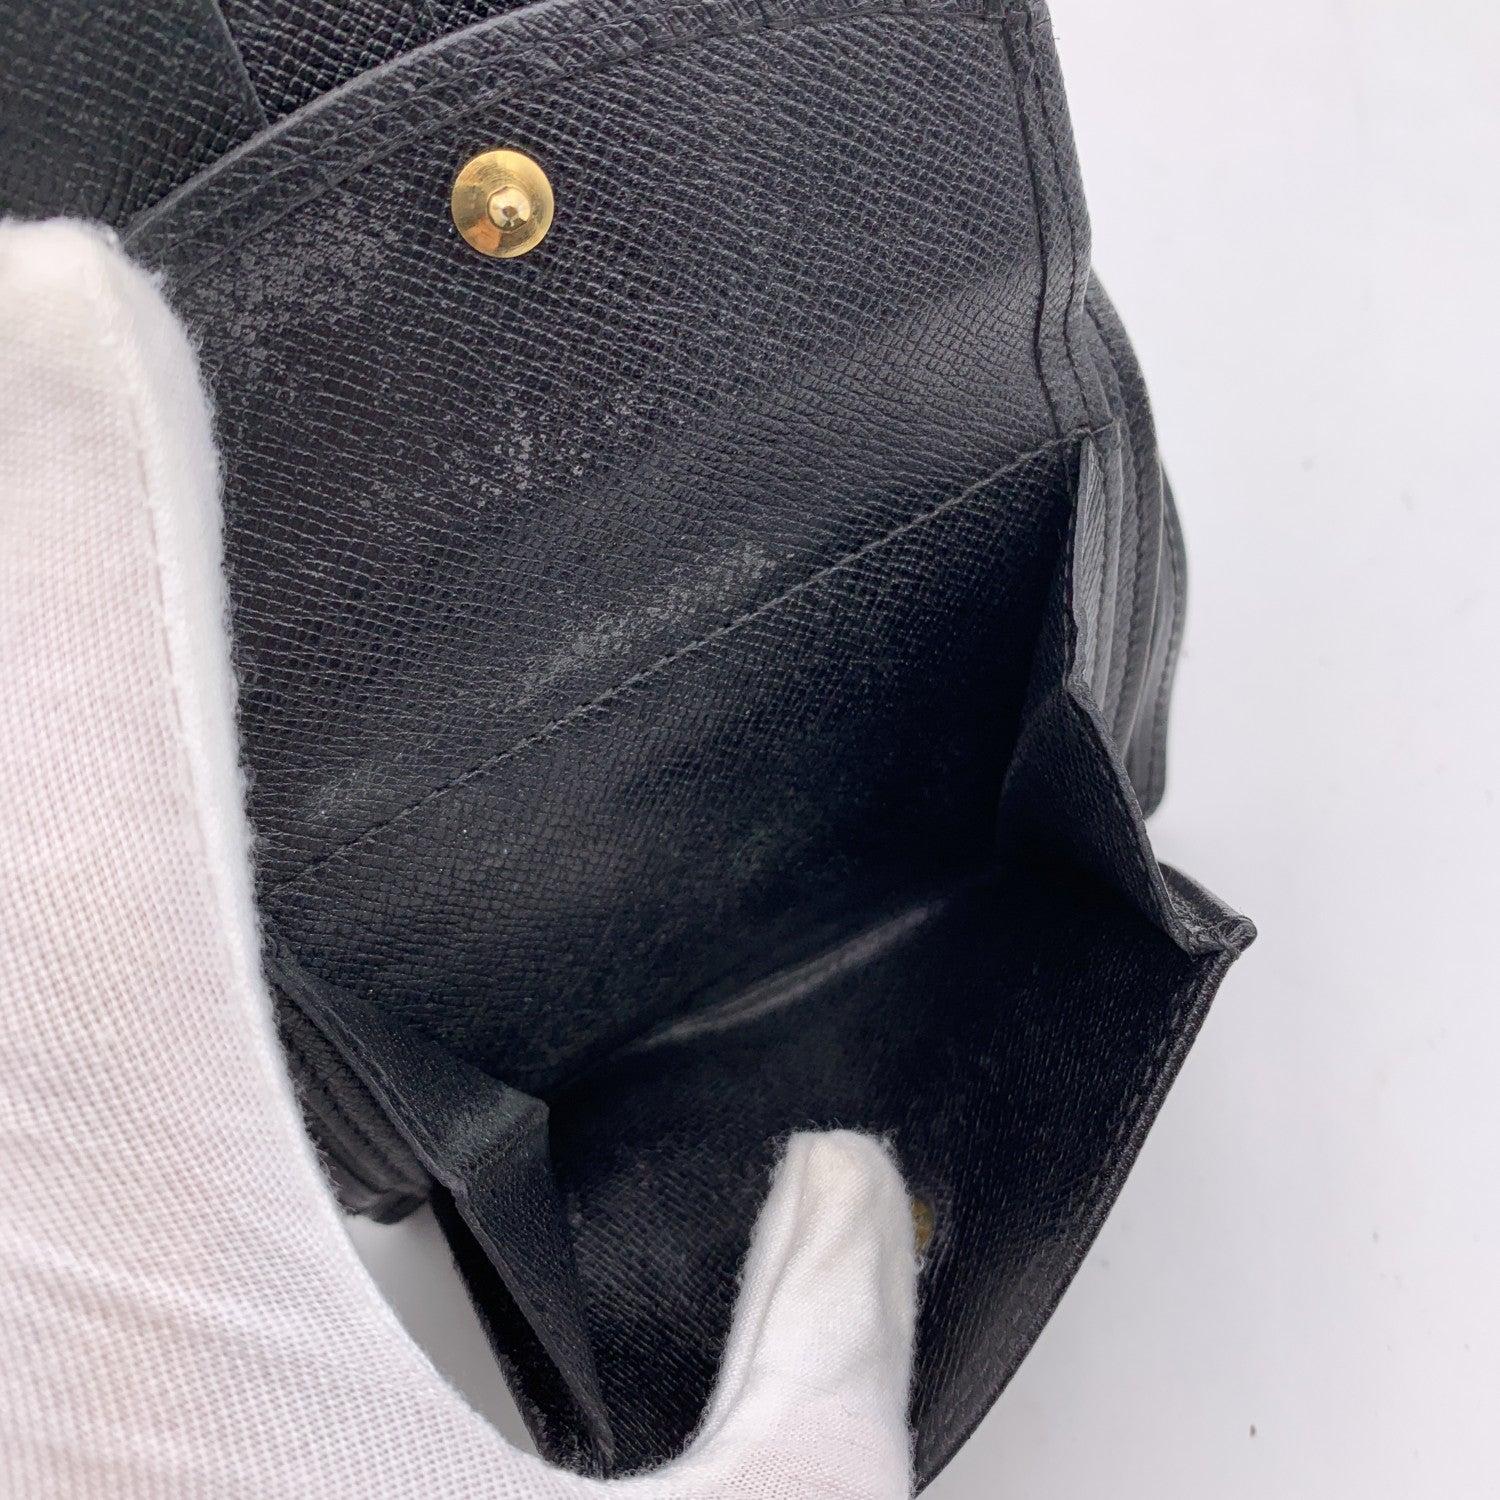 Women's or Men's Louis Vuitton Vintage Black Epi Leather Compact Wallet Coin Purse